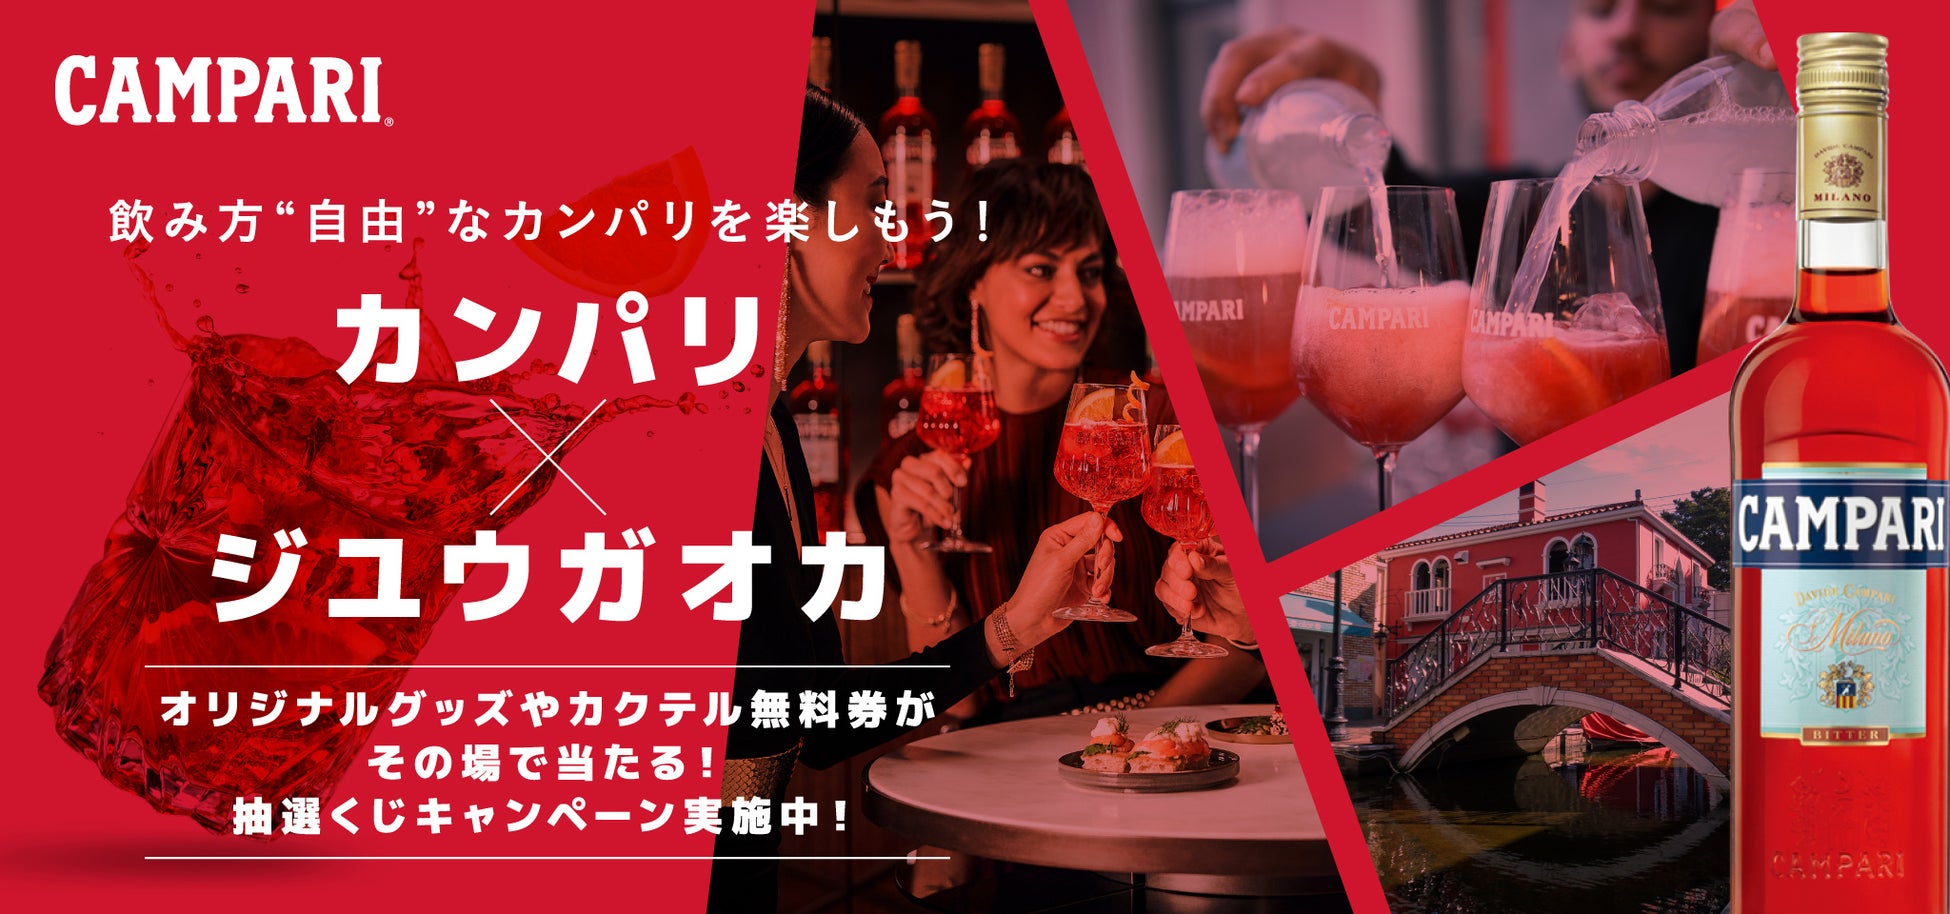 四川料理の名店「赤坂四川飯店」と水俣・芦北地域とのコラボフェアを開催